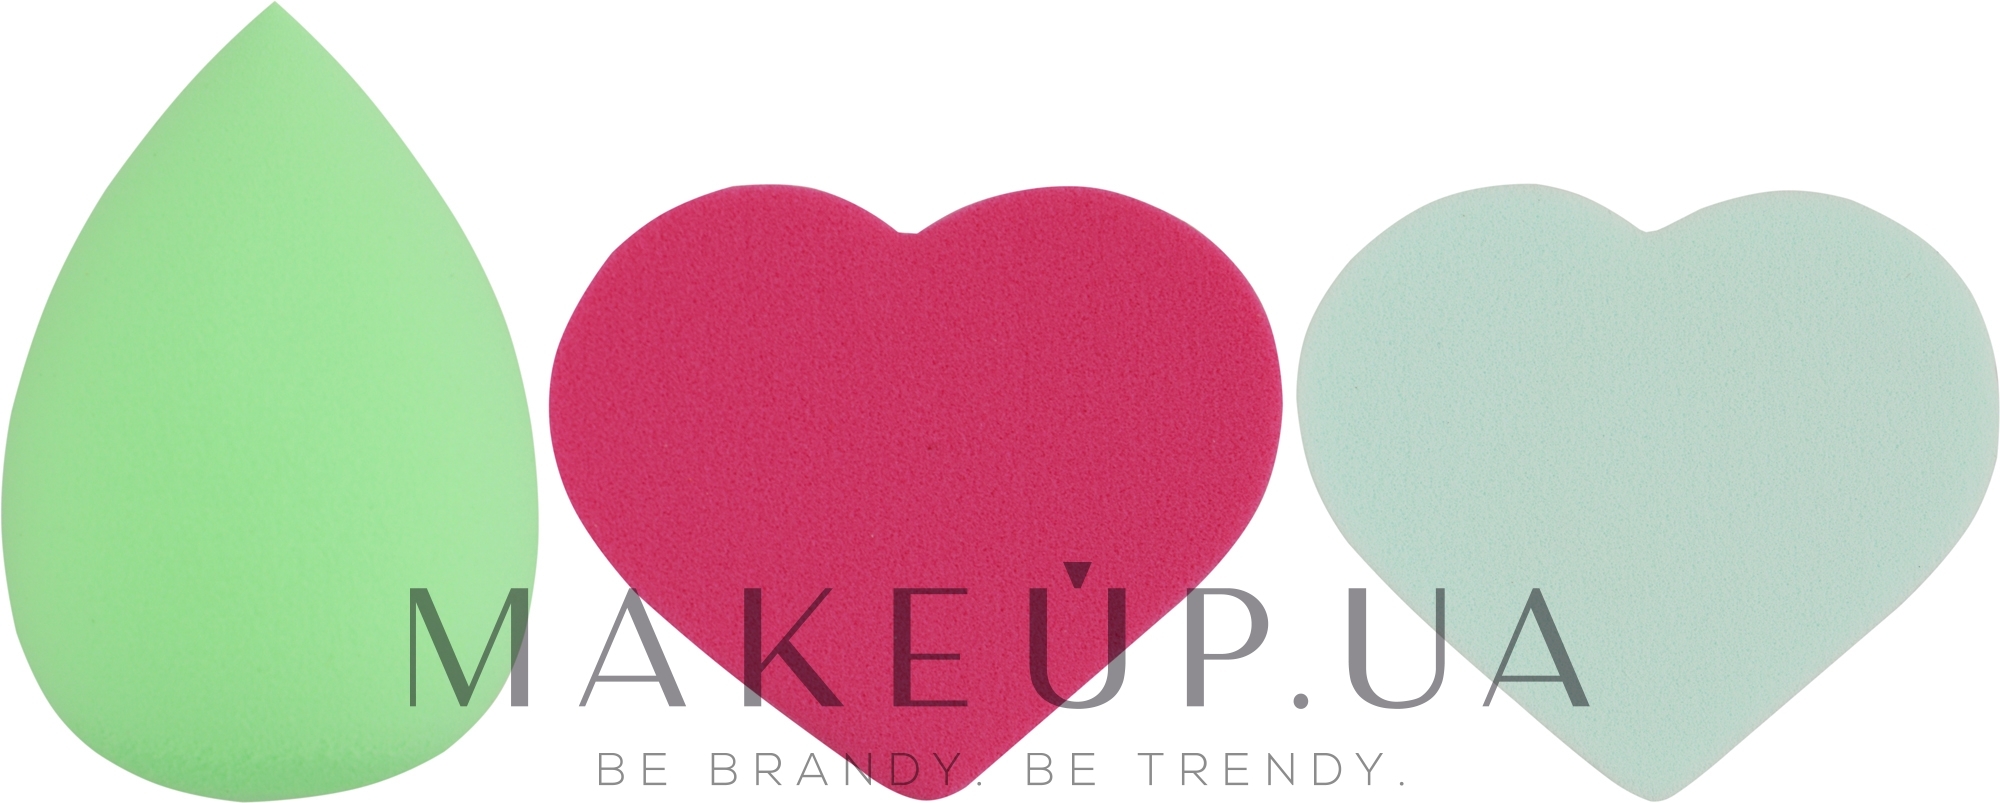 Набор спонжей для макияжа Beauty Blender, капля + 2 сердце, MIX (салатовый + светло-голубой + малиновый) - Puffic Fashion PF-229 — фото 3шт